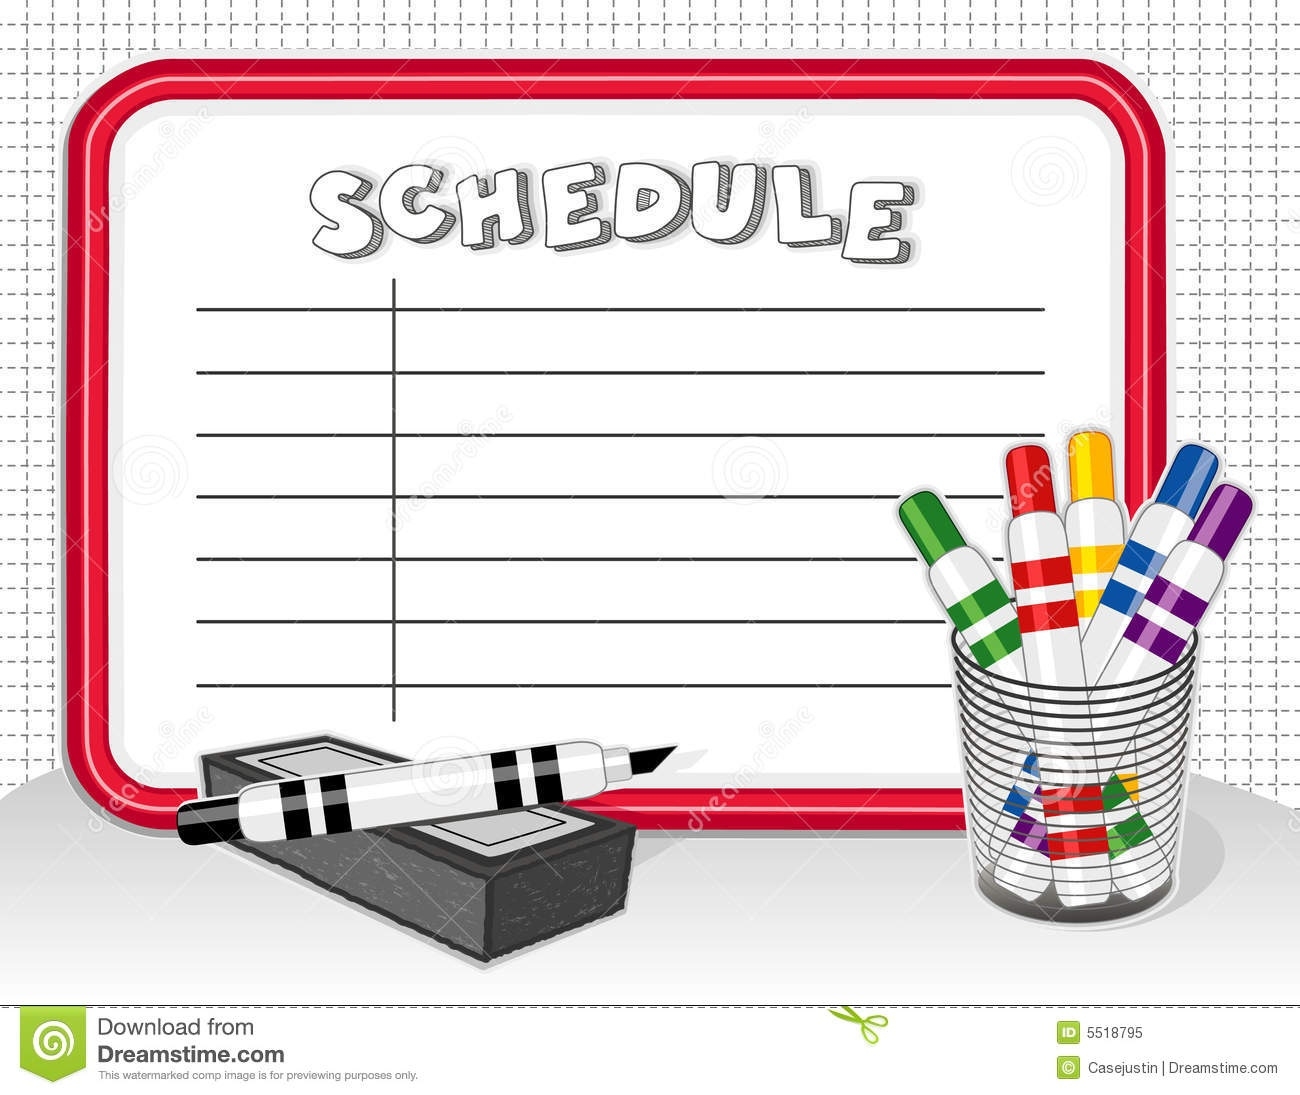 schedule clipart work schedule